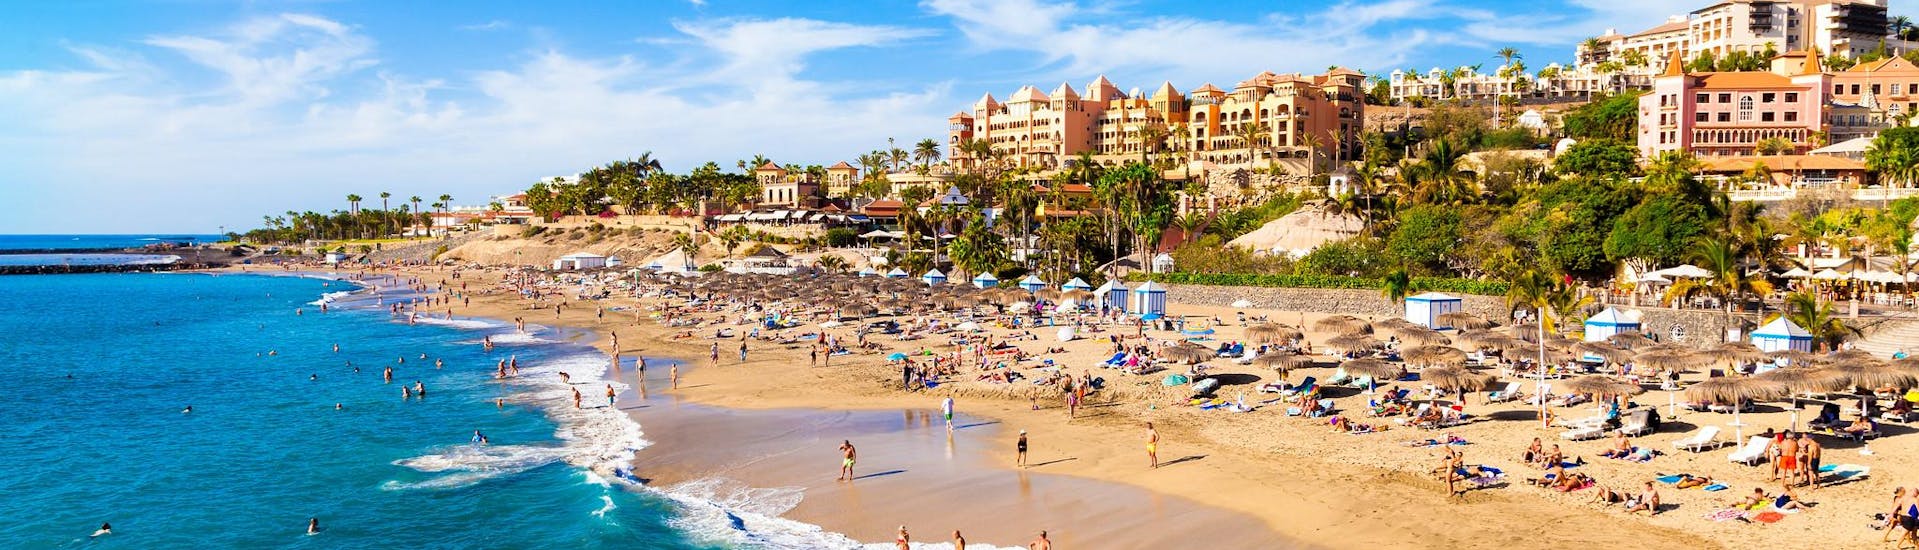 Una playa en Costa Adeje en Tenerife donde tienen lugar diferentes deportes acuáticos.